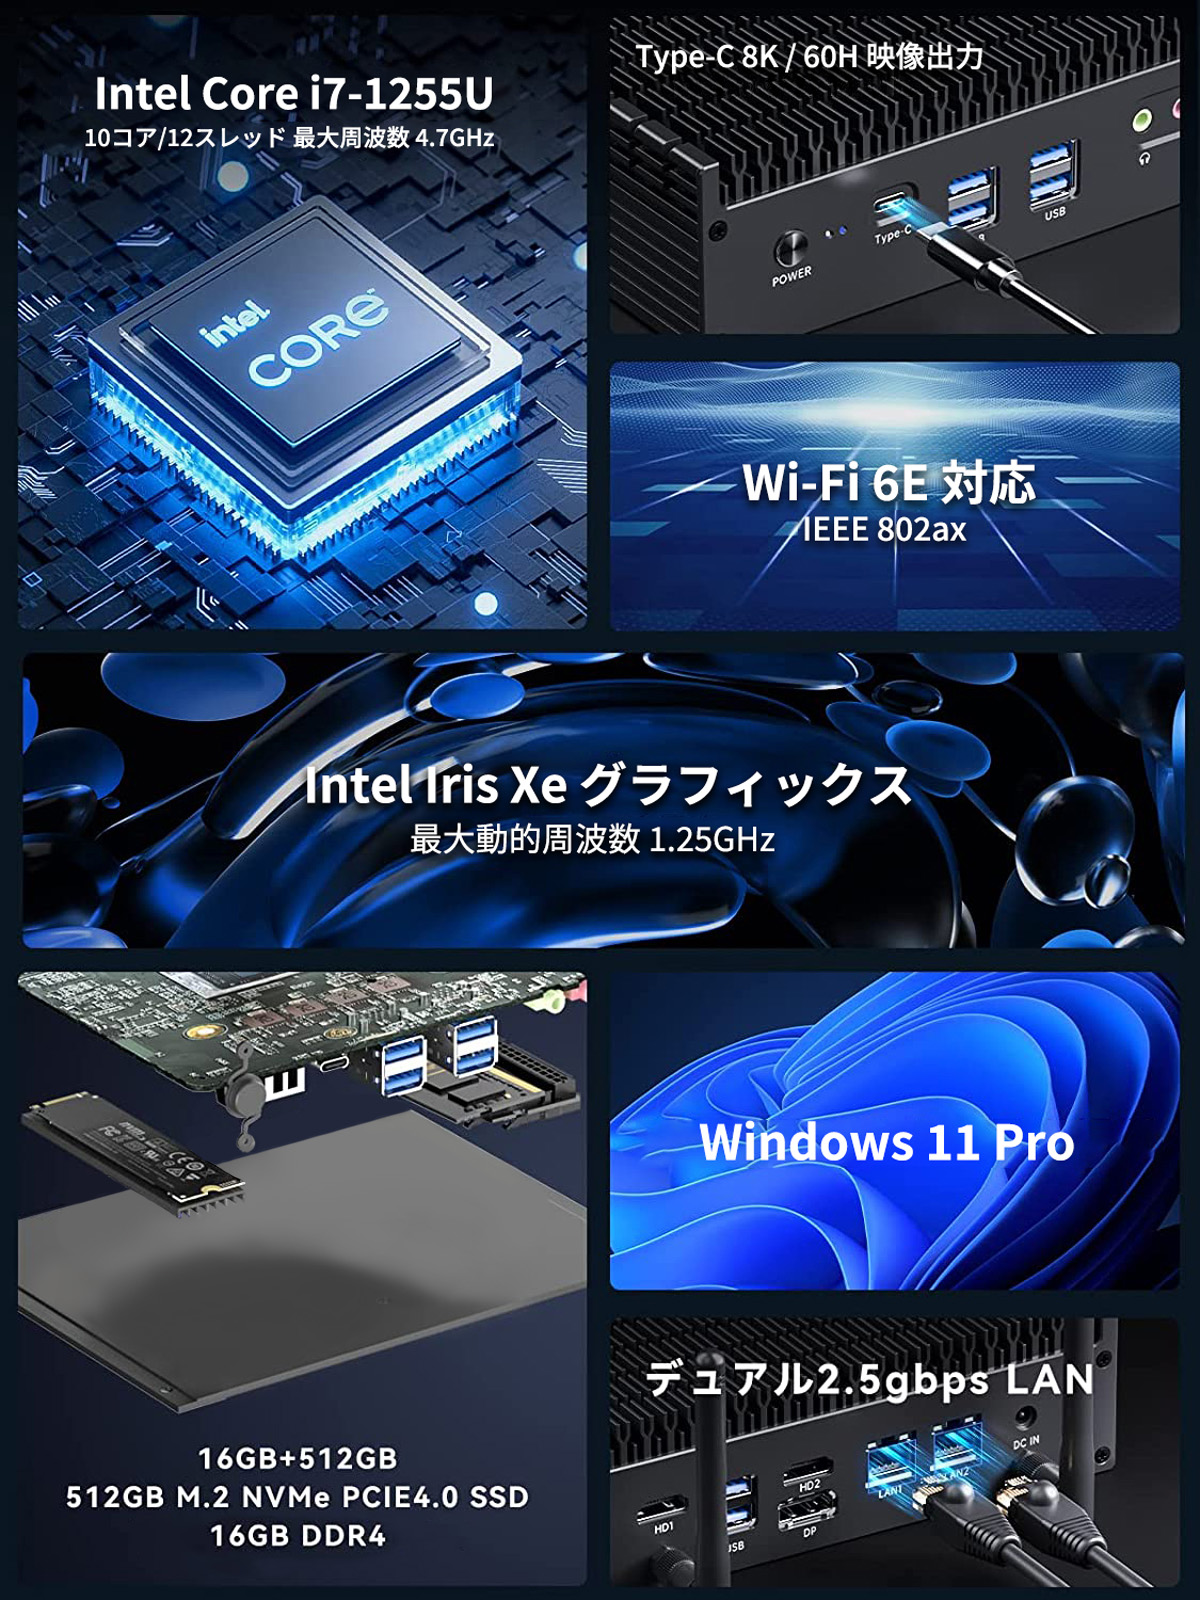 ファンレスミニpc ミニpc デスクトップパソコン 新品 windows11pro 